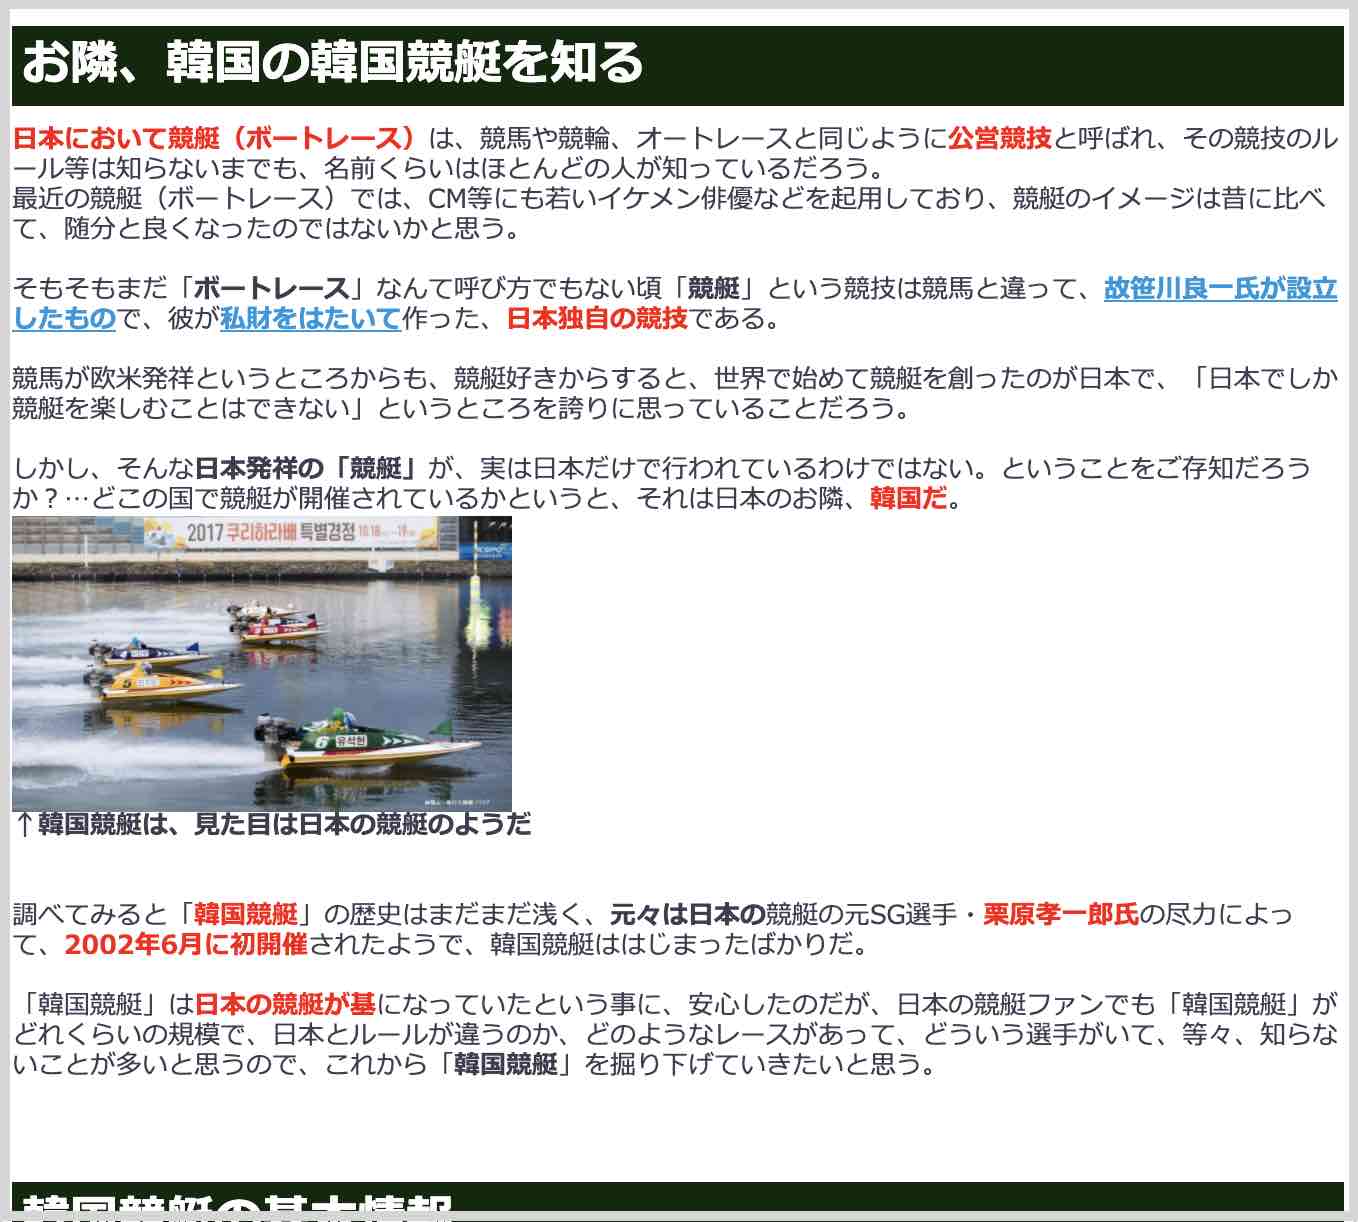 競艇ボートレースコンテンツ「韓国競艇の場所や賞金、全情報」